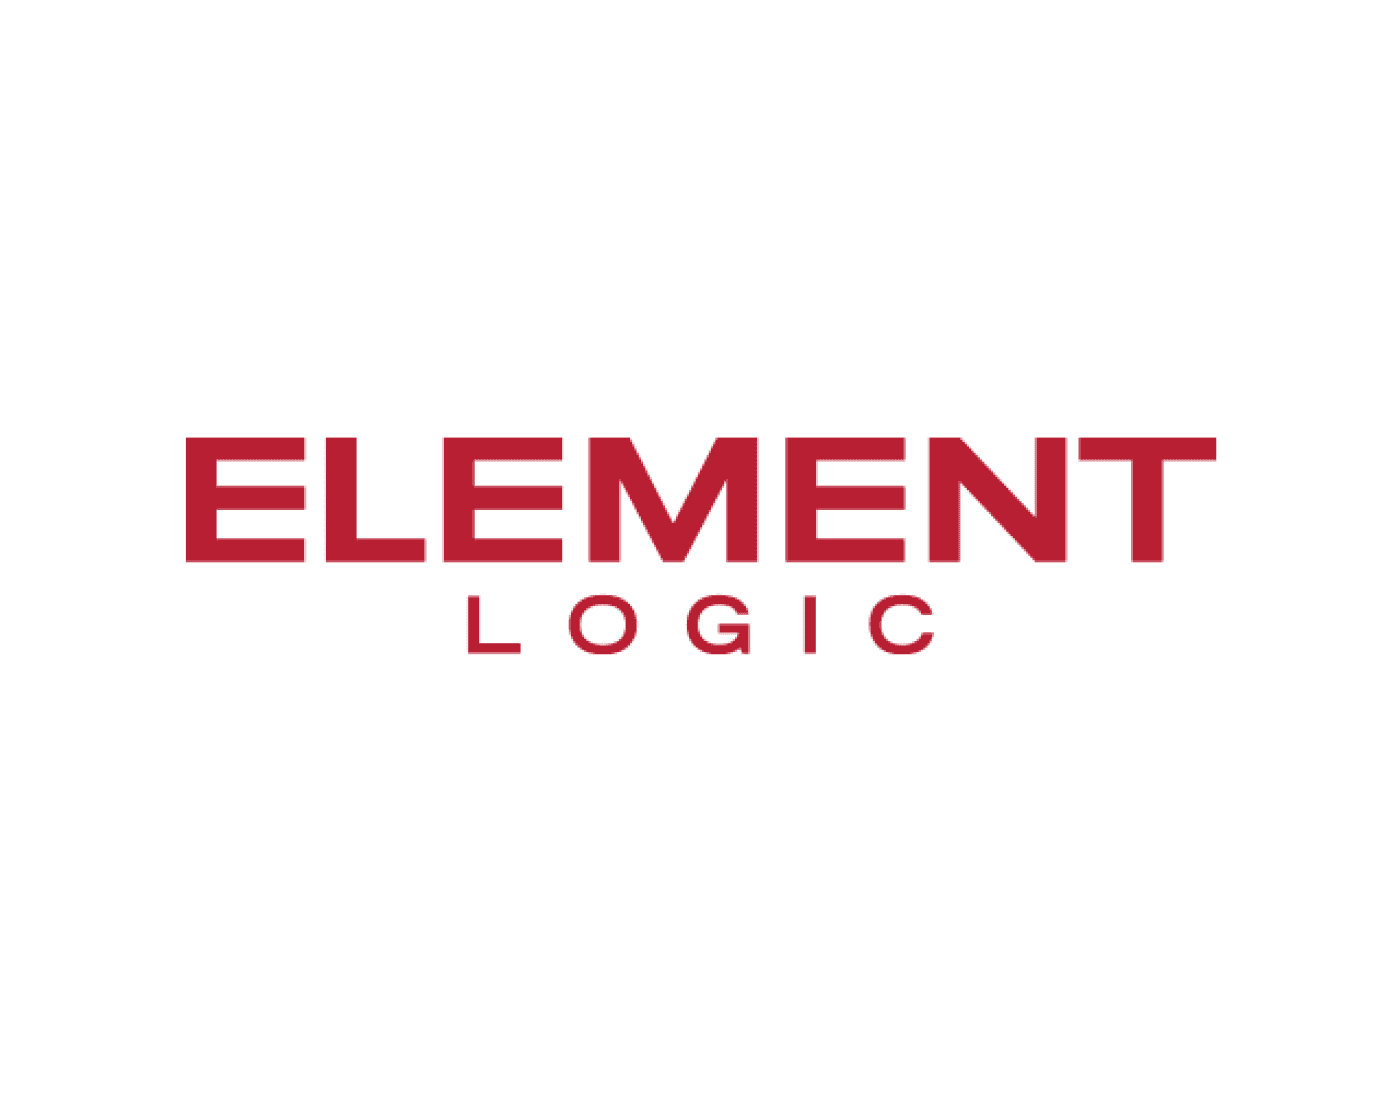 element_logic-640x500-01.png